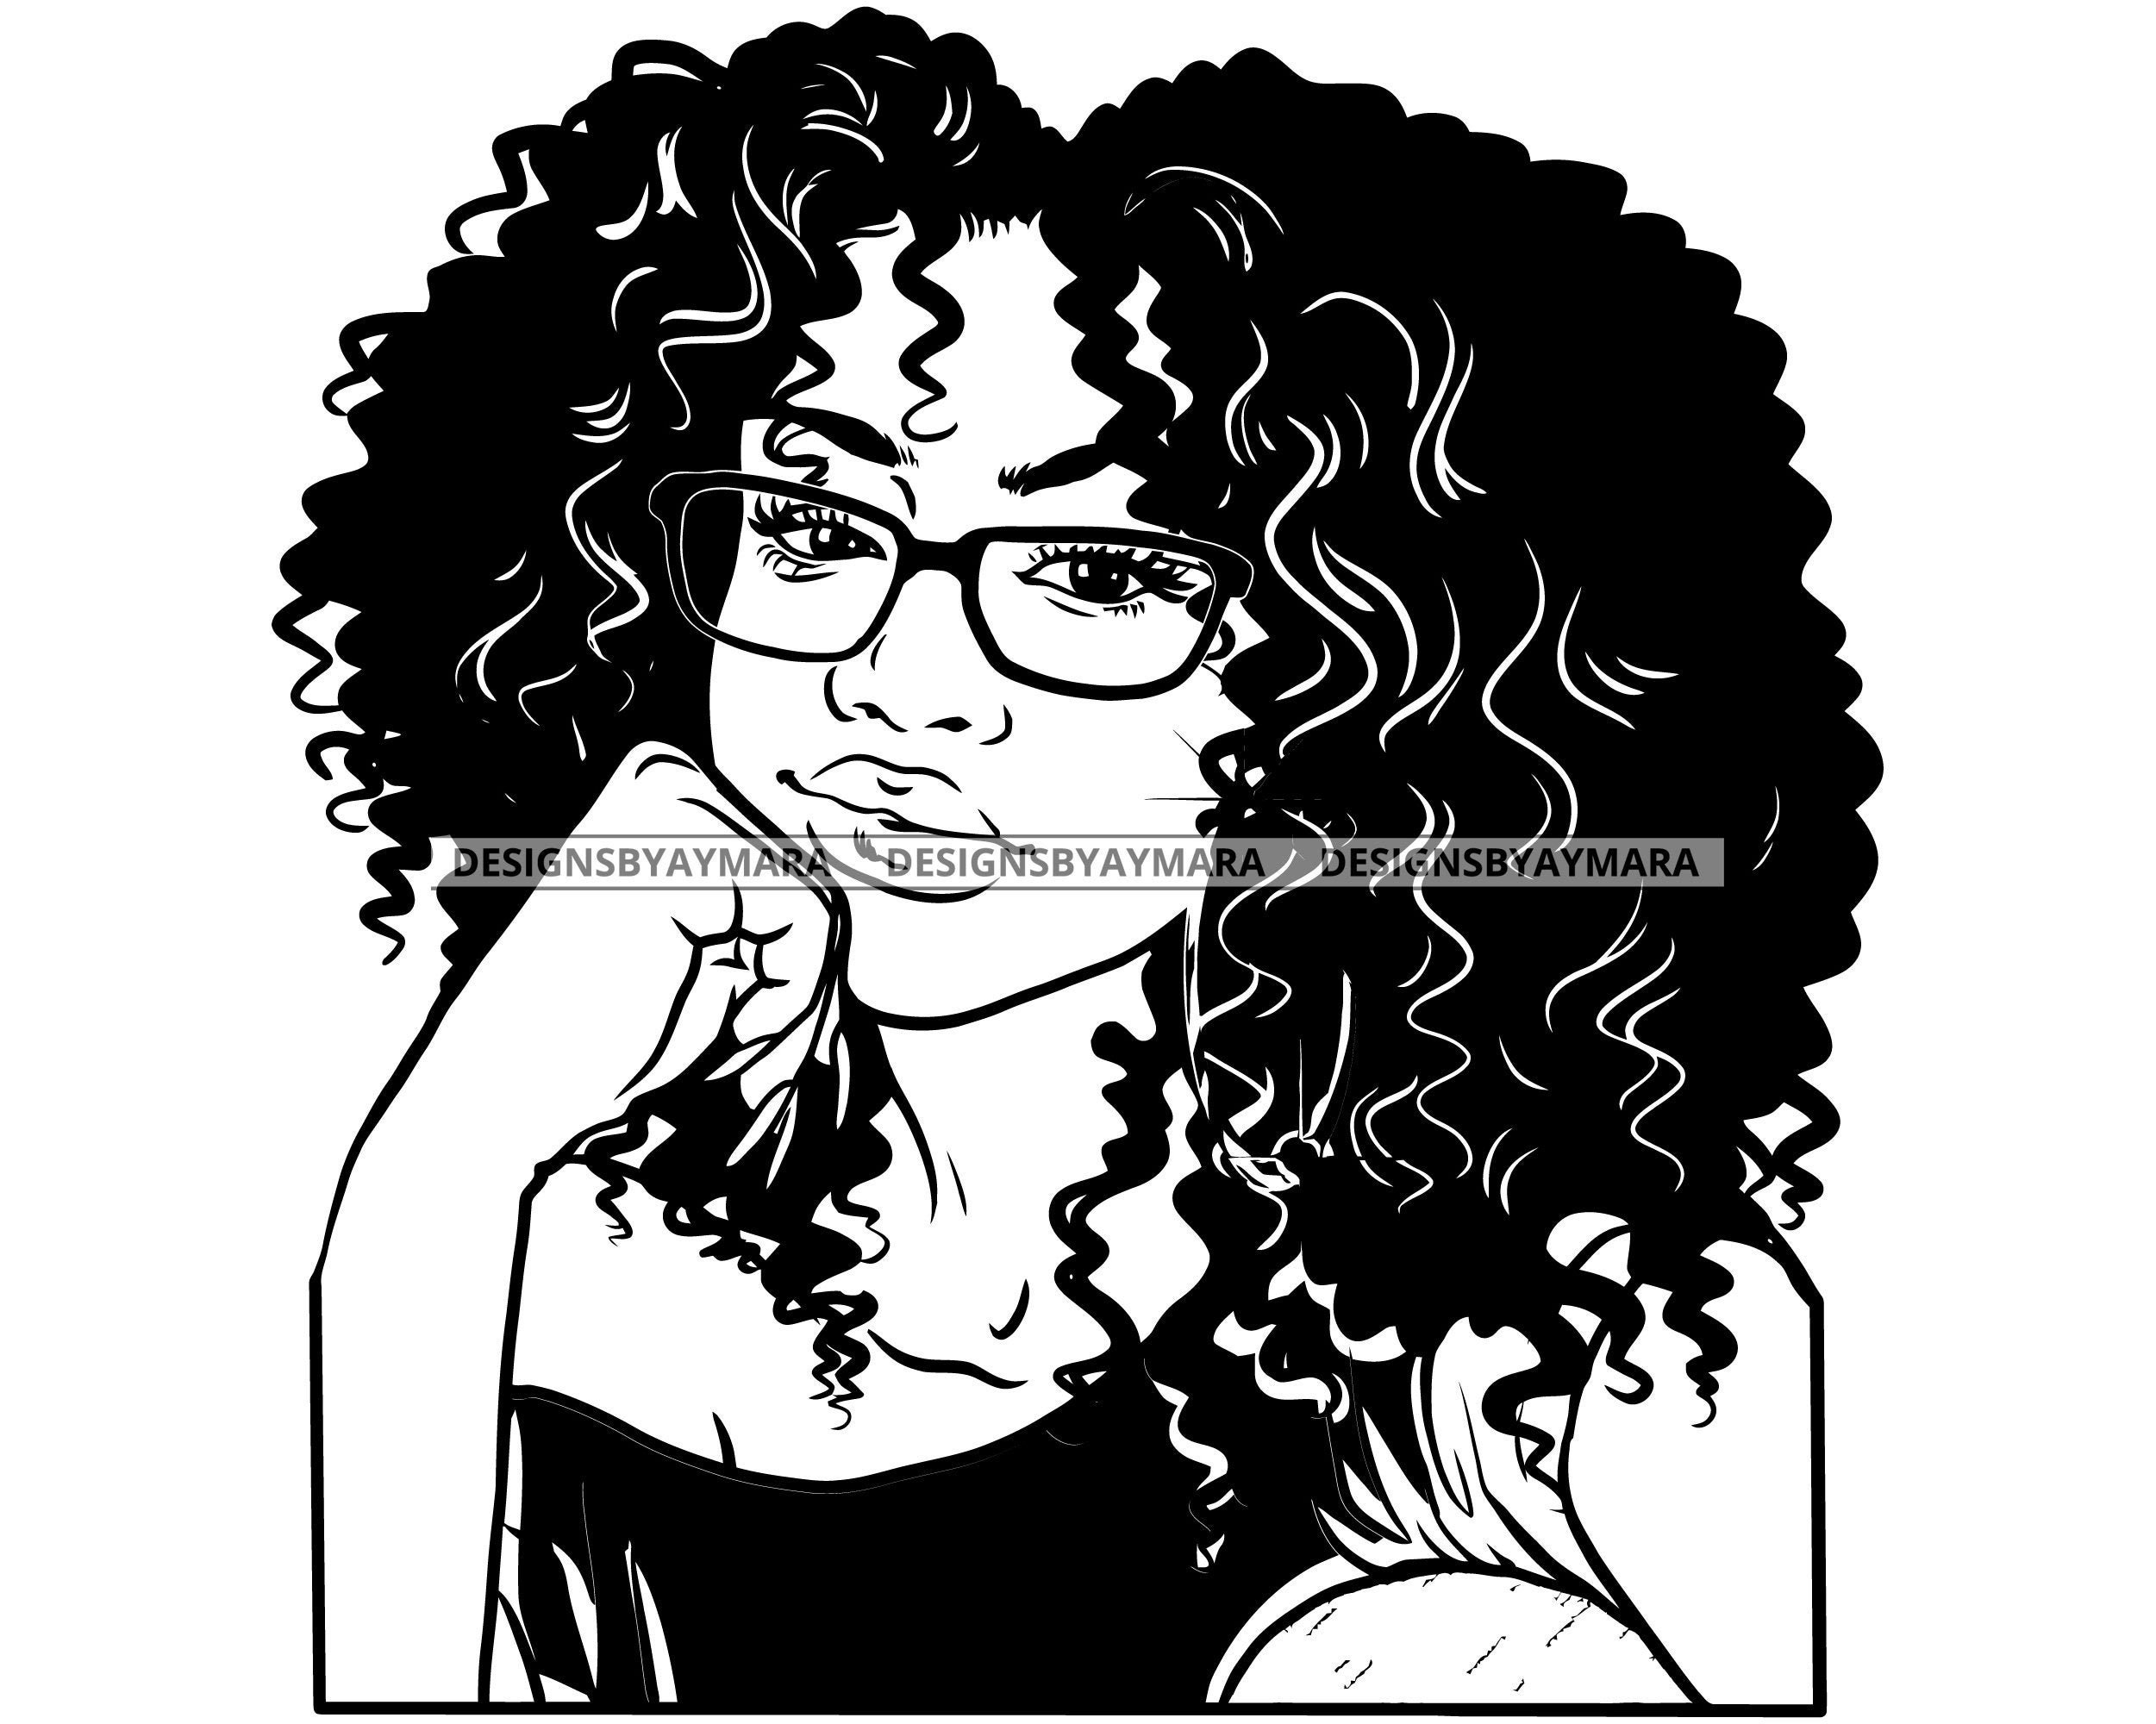 Free Latina Curly Hair Latina Clips Latina Curly Hair Latina 8